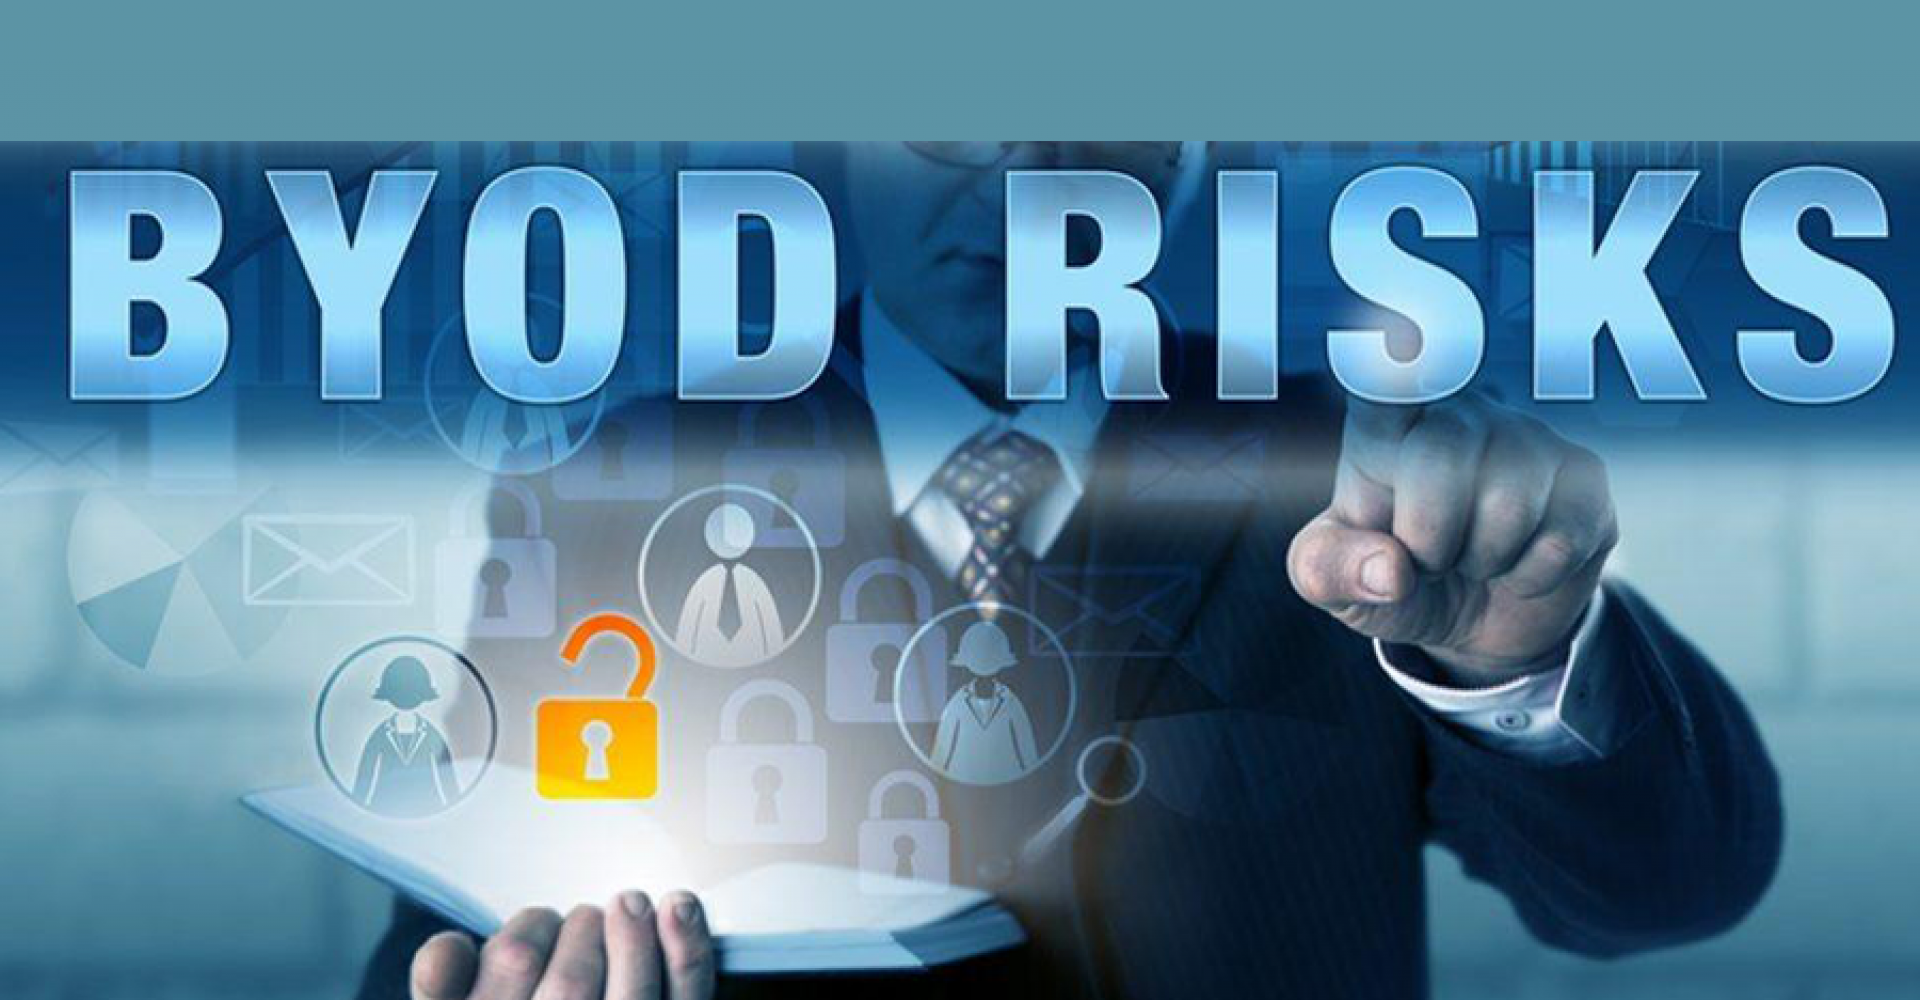 A BYOD põe em risco a segurança das empresas?